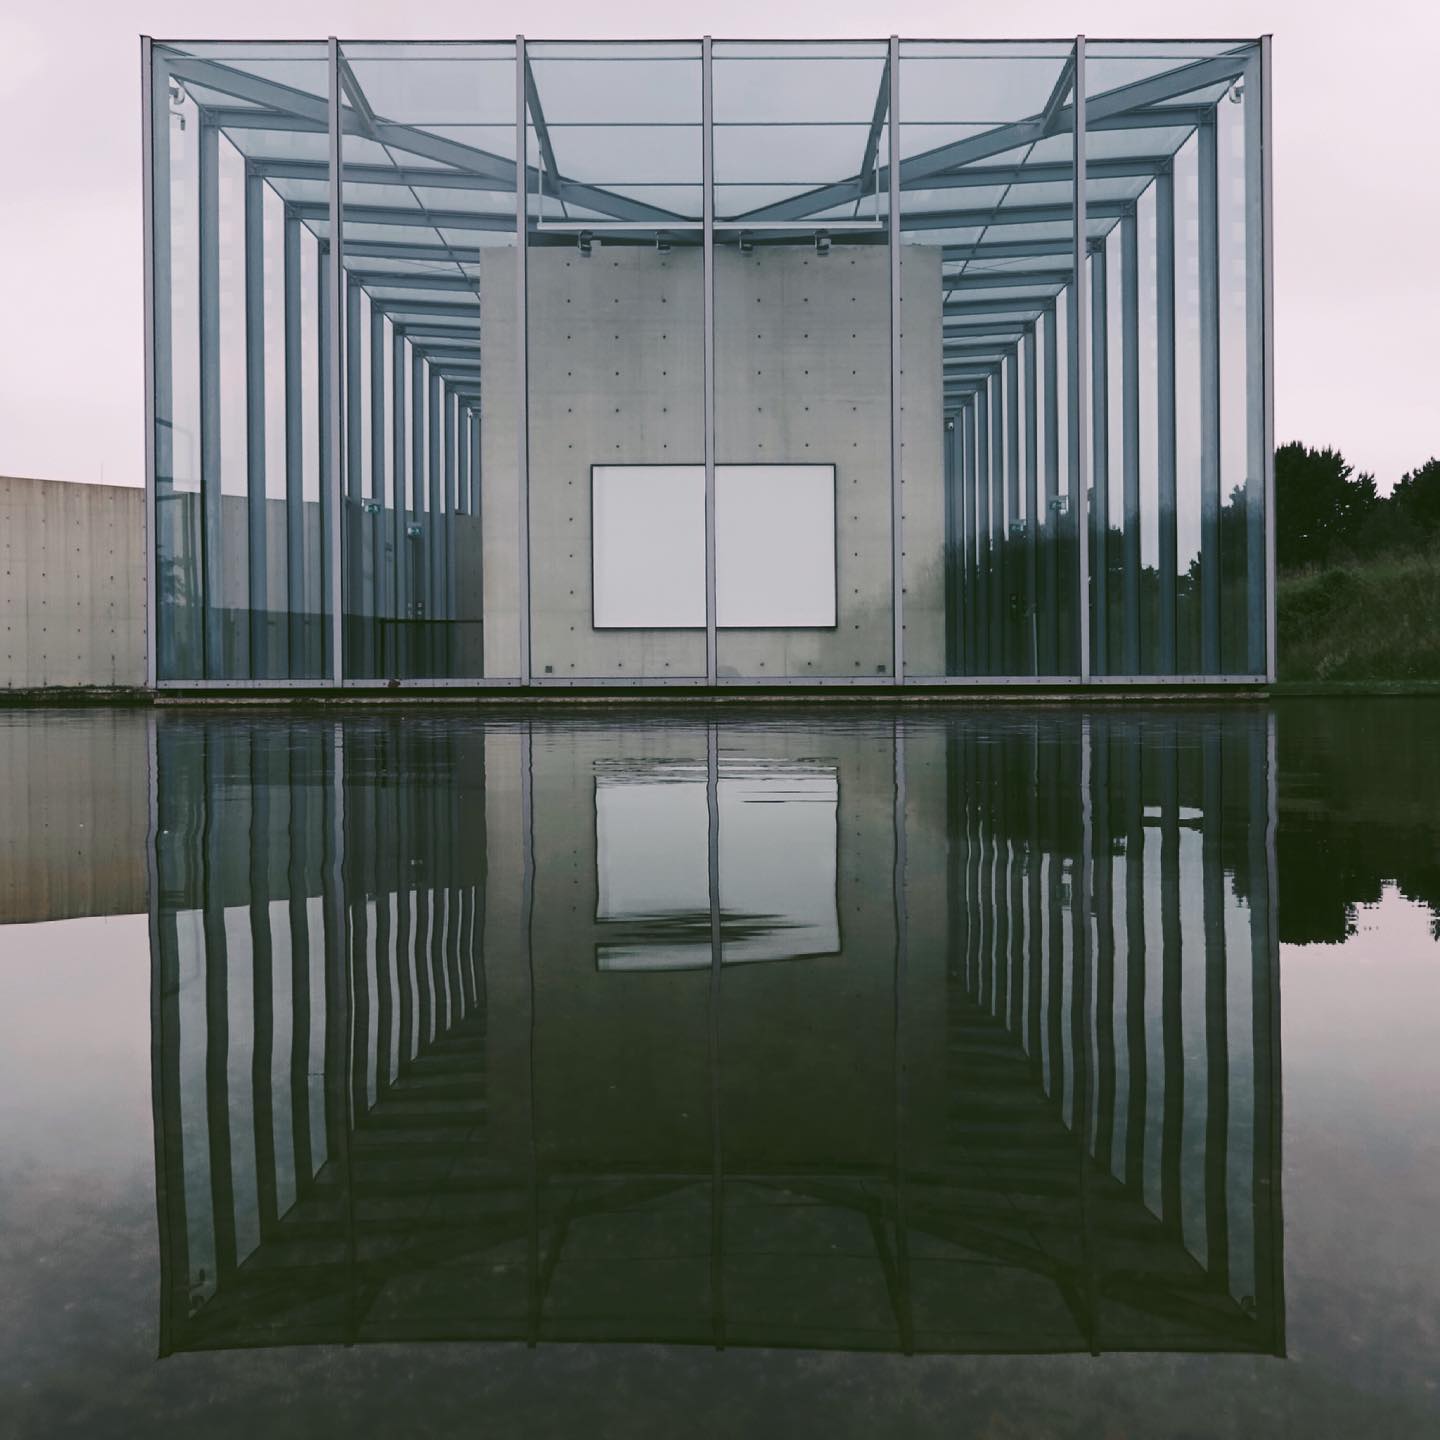 Ausstellungsgebäude der Langen Foundation, Neuss, Germany, June 2021